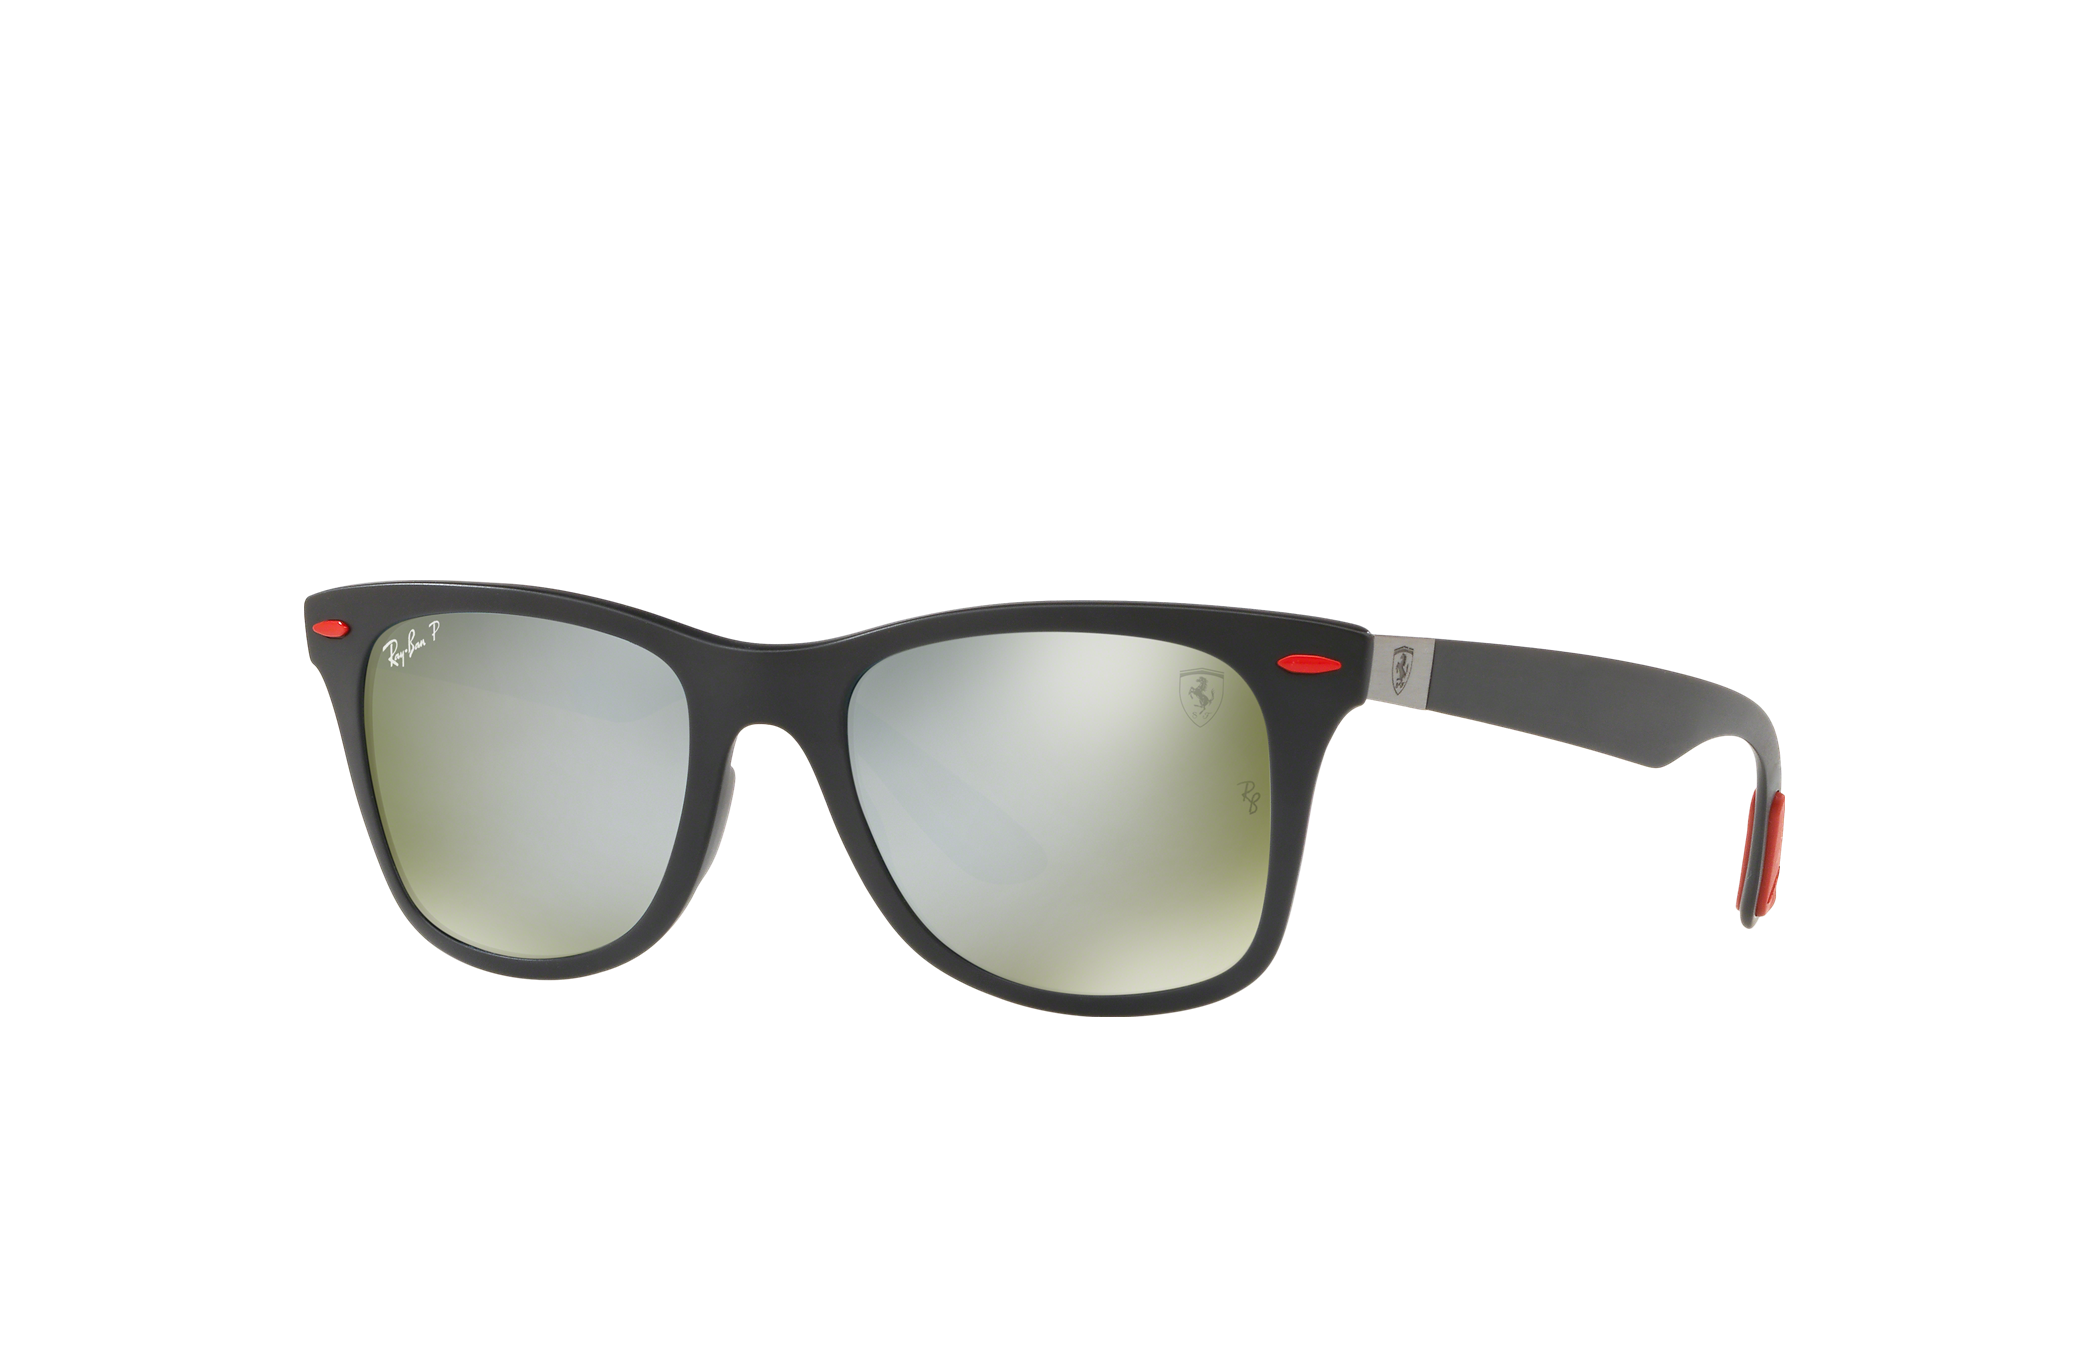 Scuderia Ferrari Brazil Limited Edition Sunglasses in Black and Silver  Chromance | Ray-Ban®